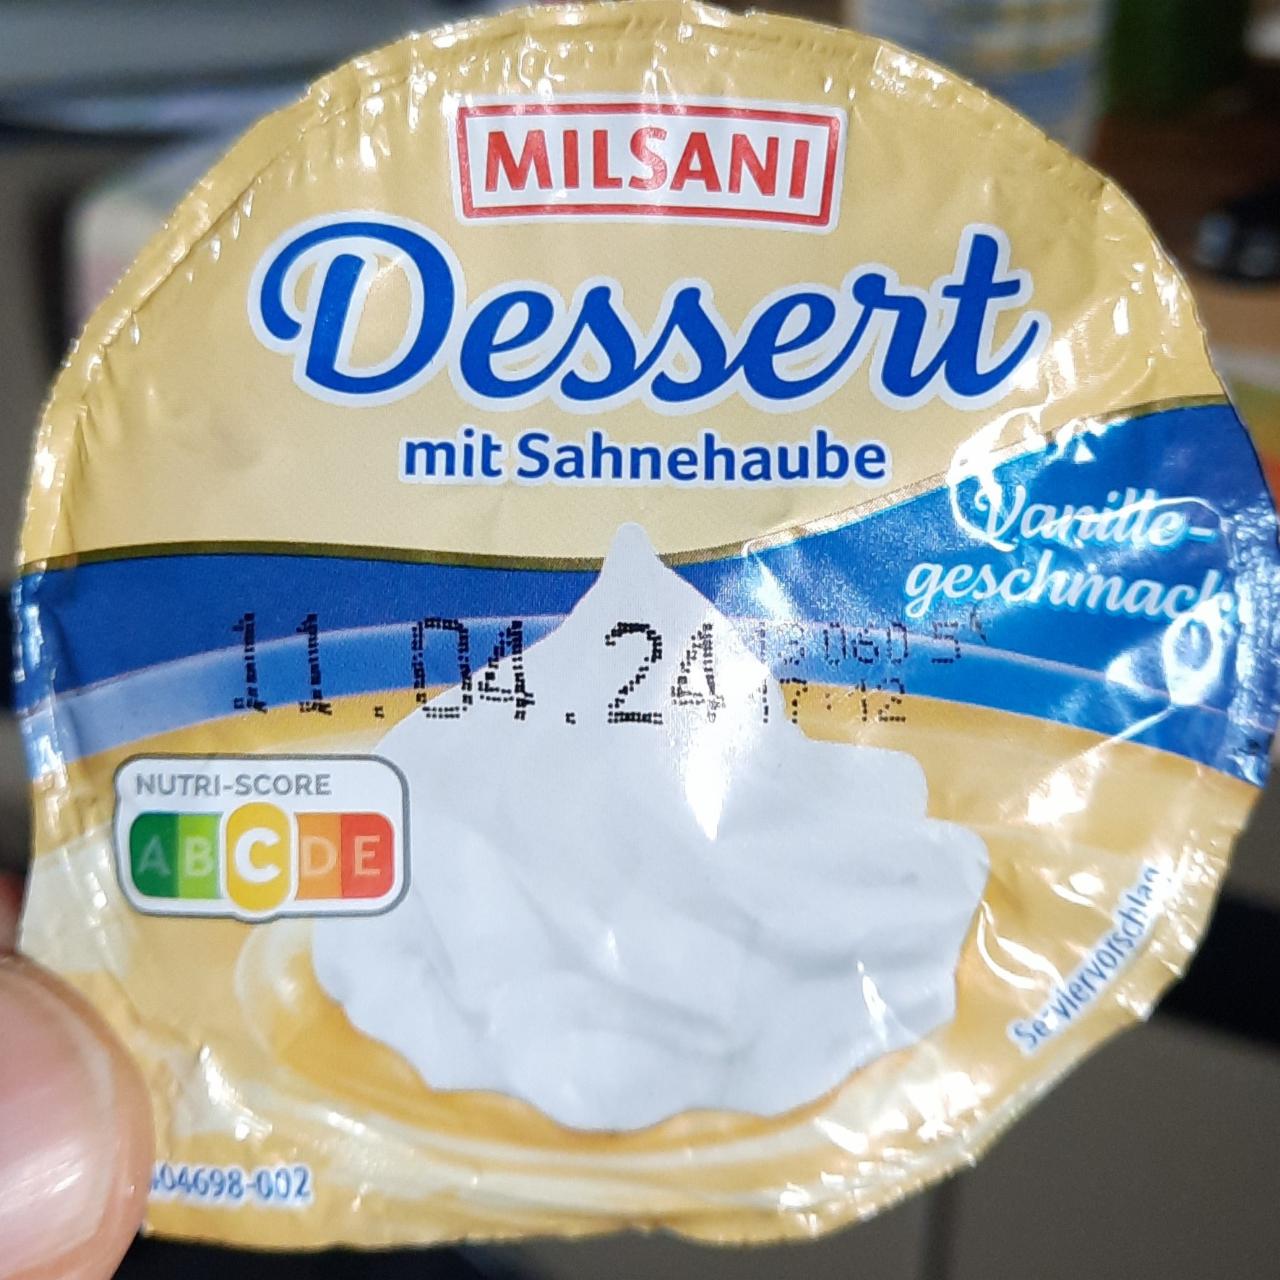 Фото - Dessert mit Sahnehaube Vanillegeschmack Milsani